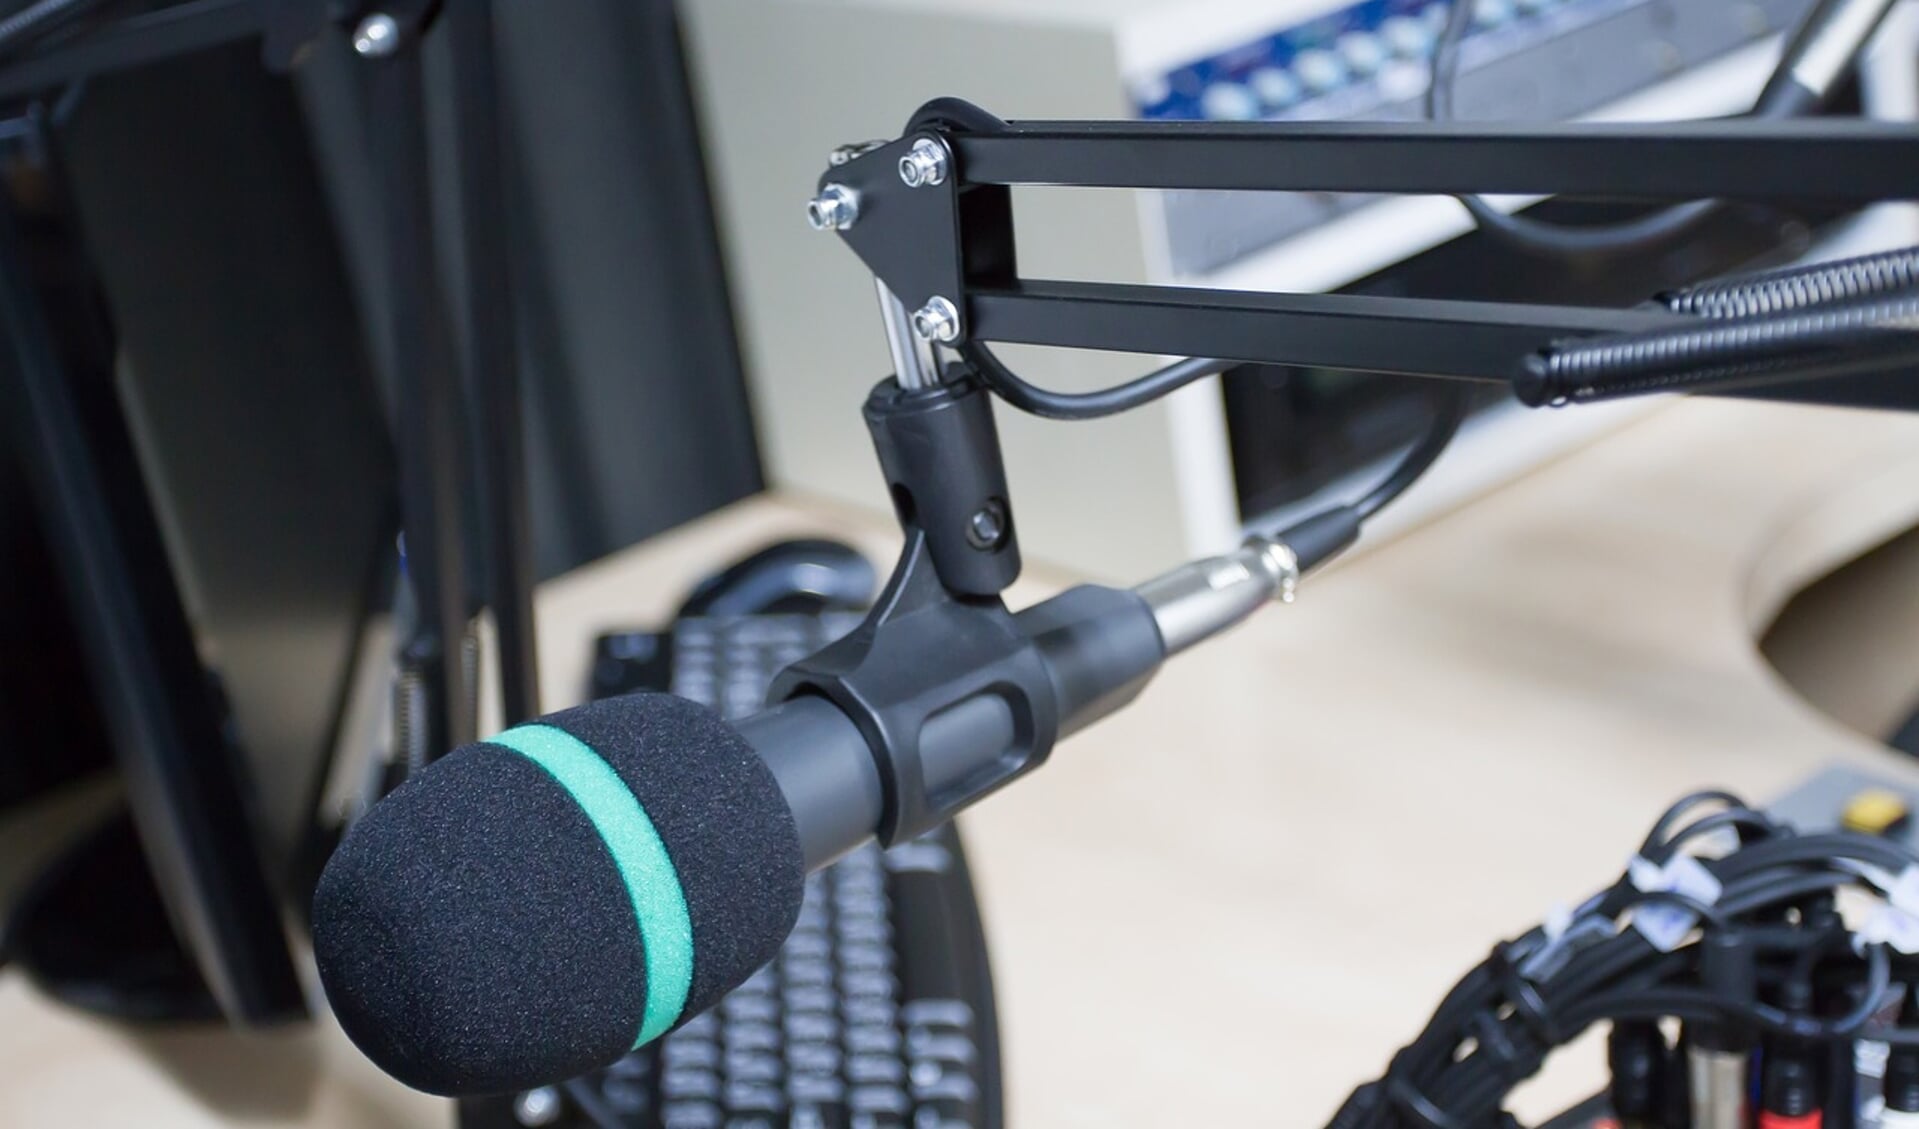 De lokale Amstelveen heeft de radio-uitzendingen voorlopig gestaakt vanwege de benodigde aanzienlijke investeringen in nieuwe radioapparatuur